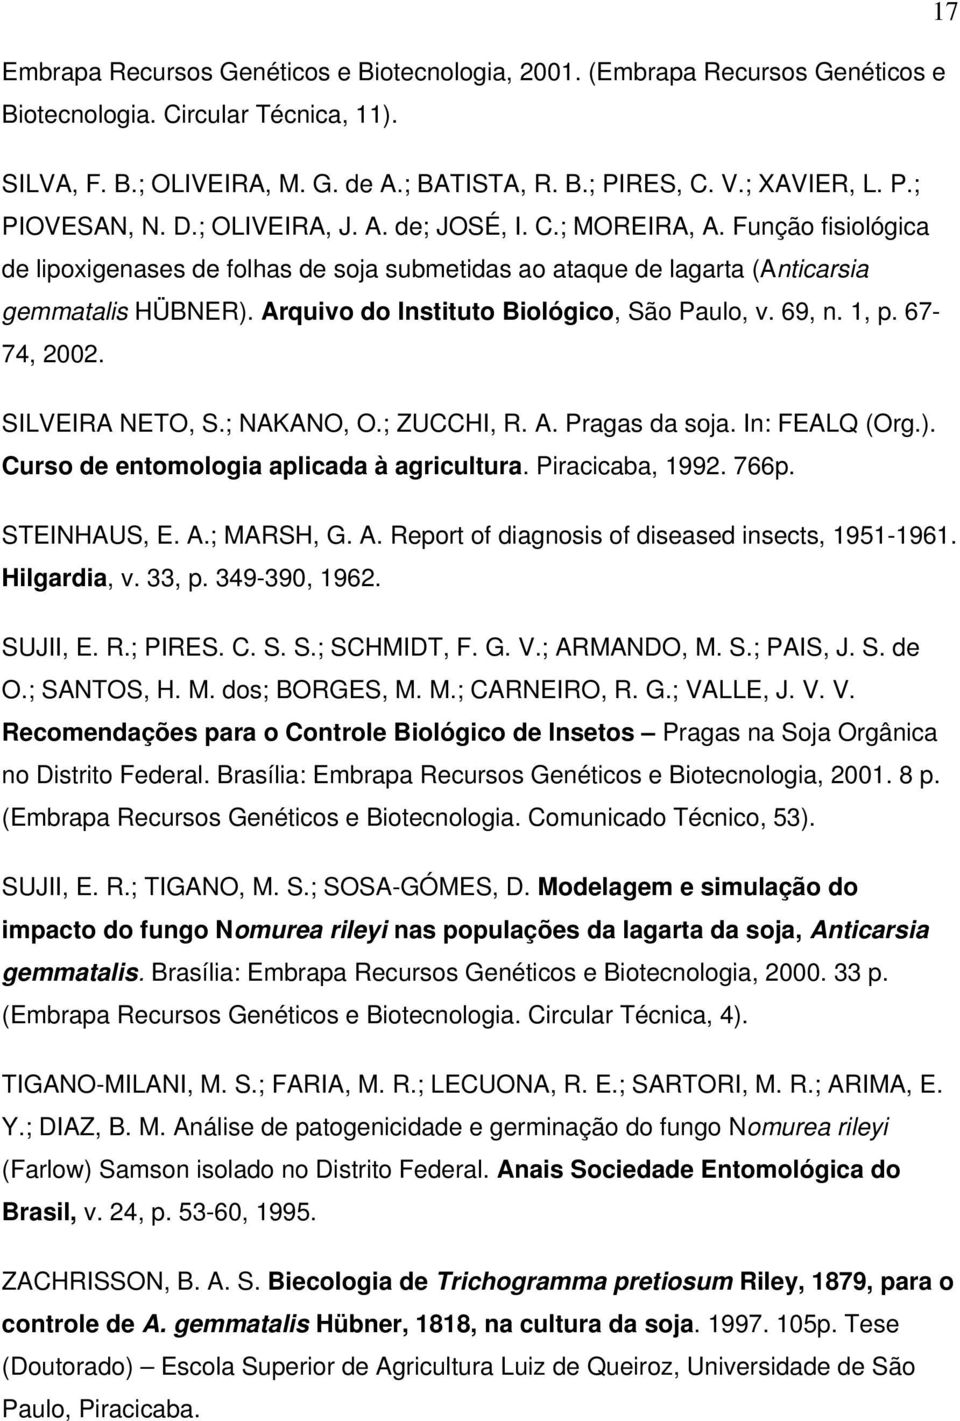 Arquivo do Instituto Biológico, São Paulo, v. 69, n. 1, p. 67-74, 2002. SILVEIRA NETO, S.; NAKANO, O.; ZUCCHI, R. A. Pragas da soja. In: FEALQ (Org.). Curso de entomologia aplicada à agricultura.